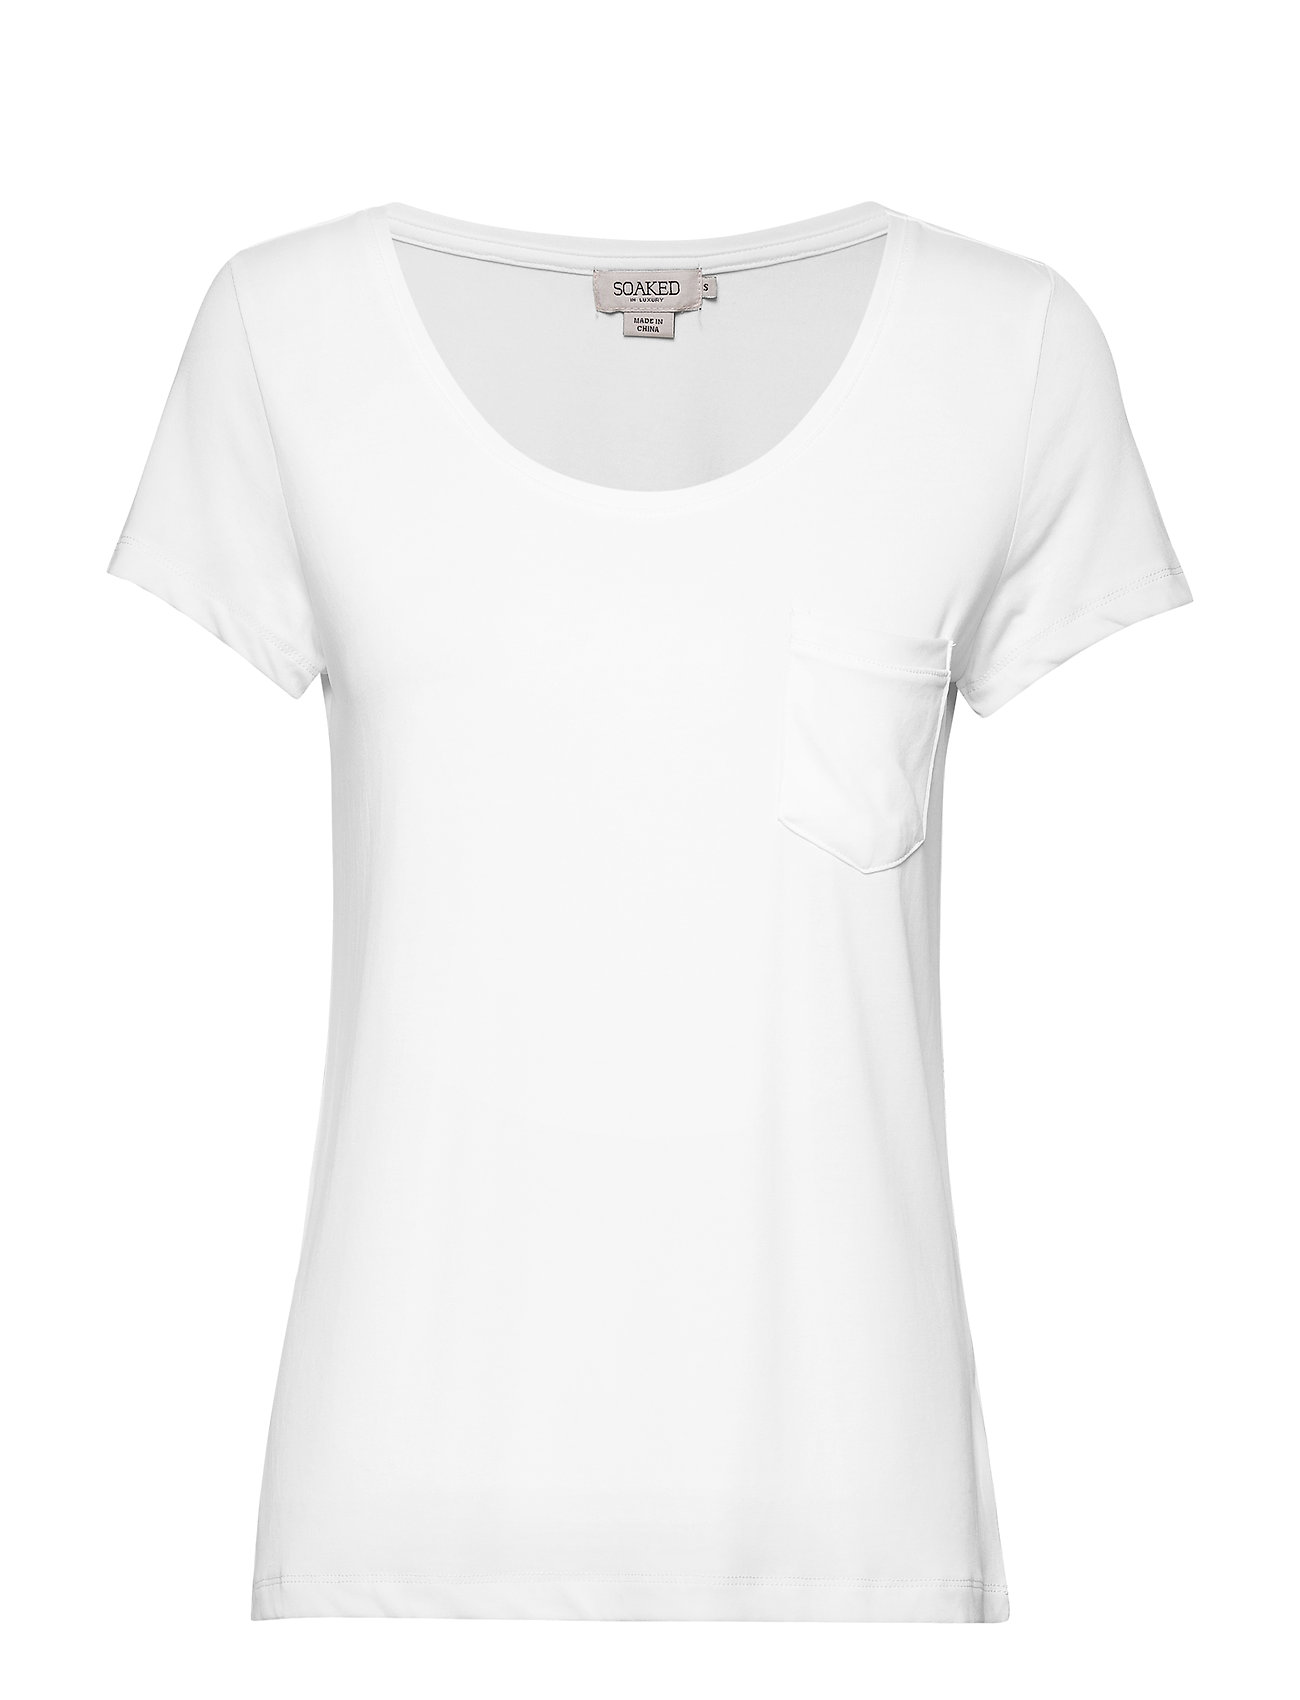 Slcolumbine Tee T-shirts & Tops Short-sleeved Valkoinen Soaked In Luxury, Soaked in Luxury